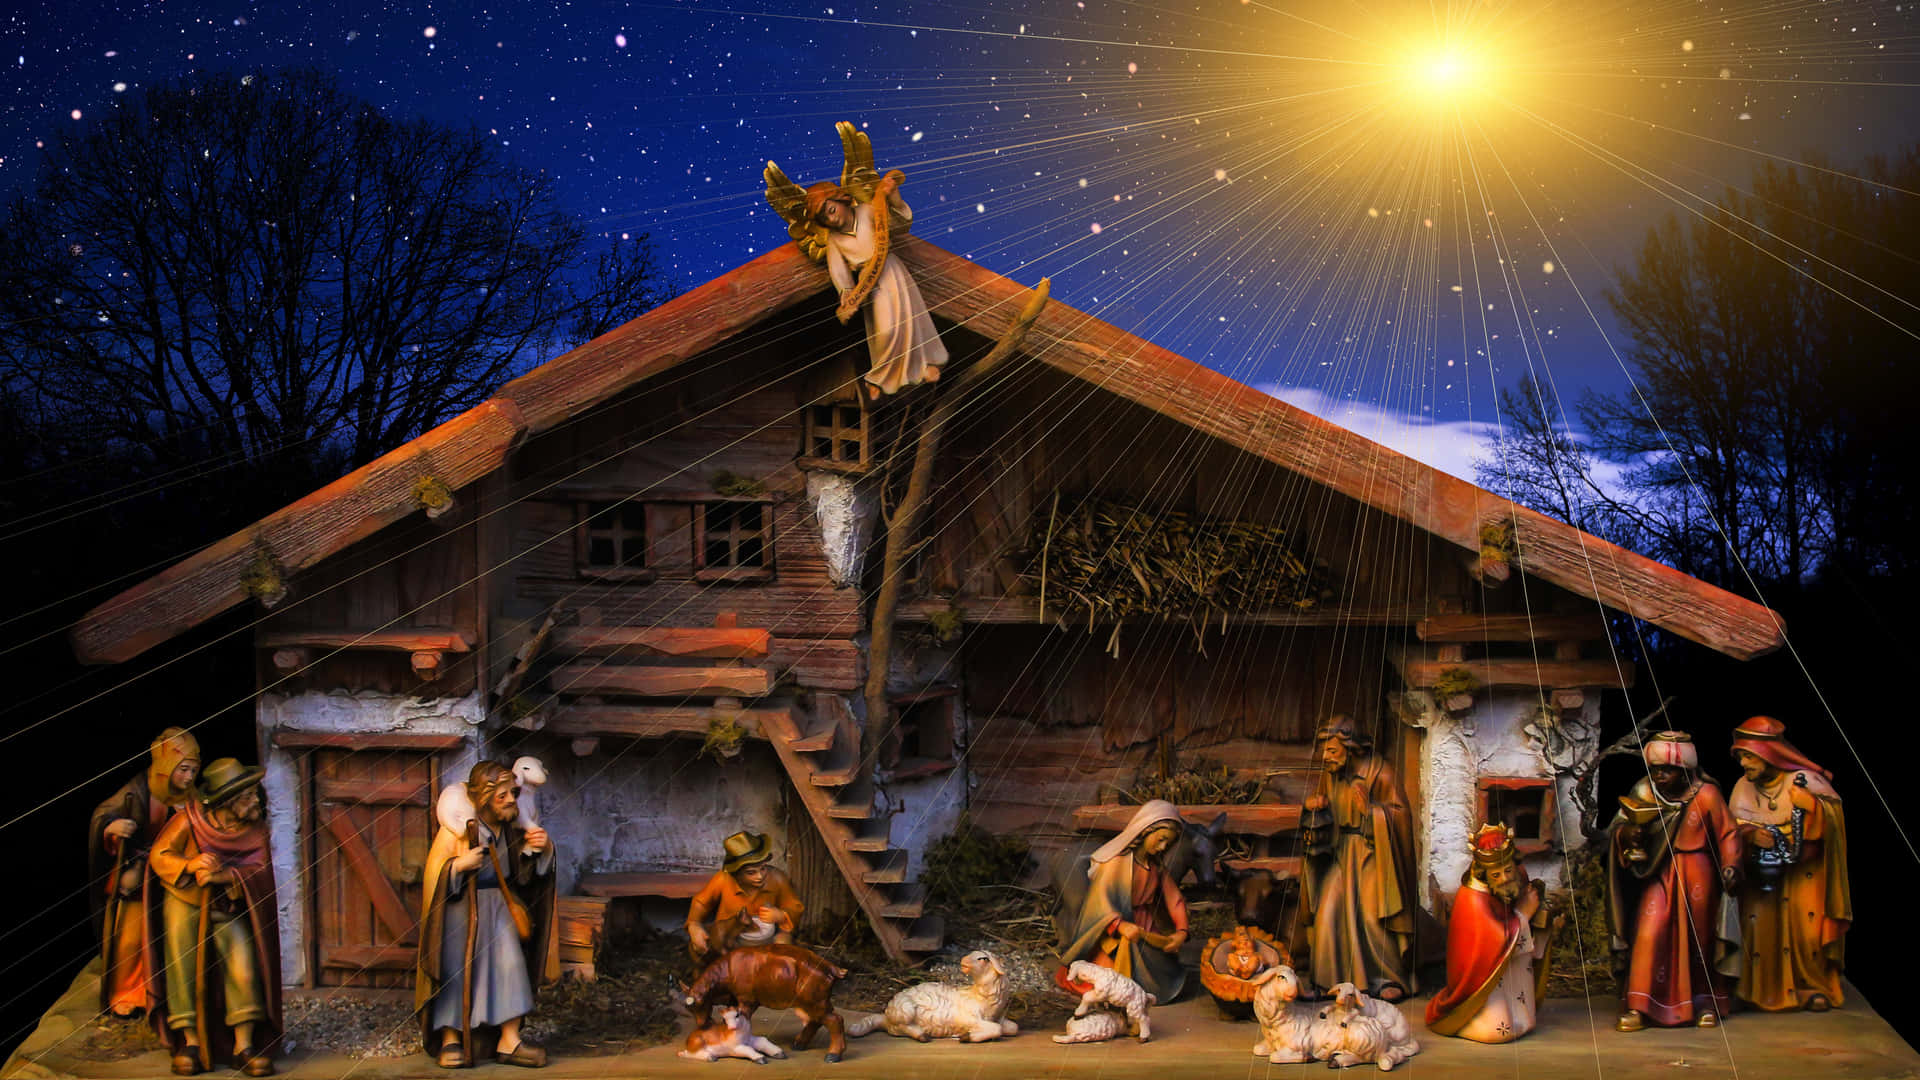 Celebre O Nascimento De Jesus Com Um Tema Natalino Alegre Para A Tela Do Seu Computador Ou Celular. Papel de Parede